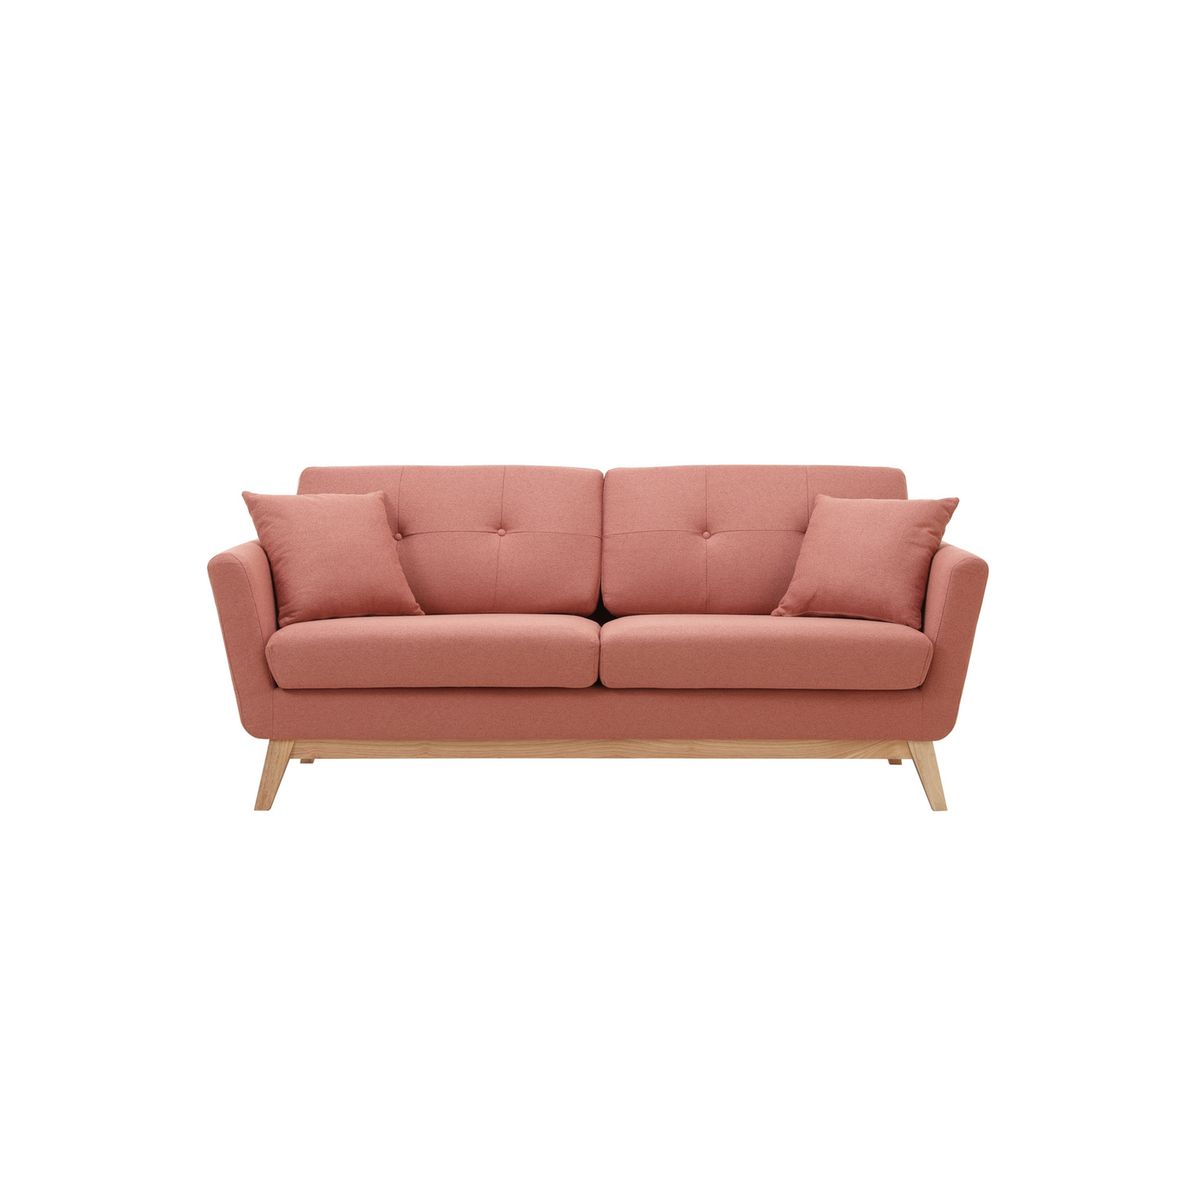 Comment réparer un canapé en simili cuir craquelé ? – Concept Usine